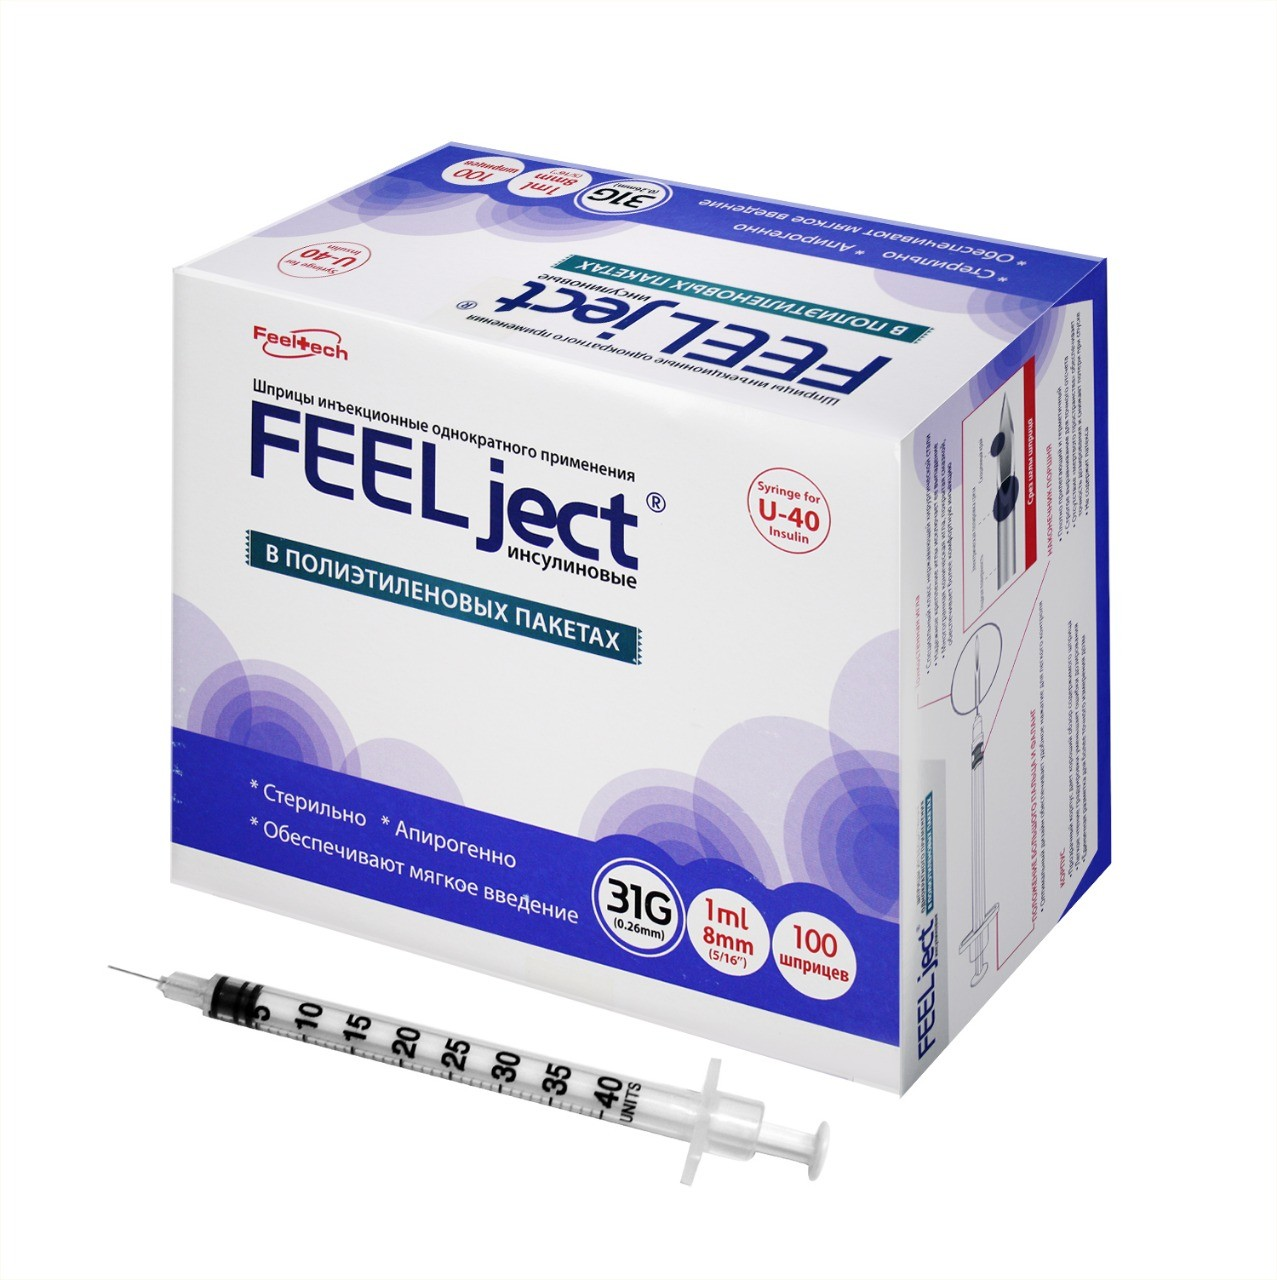 Шприц "FEELject" инсулиновый с интегрированной иглой U-40 31G * 8 мм 1 мл